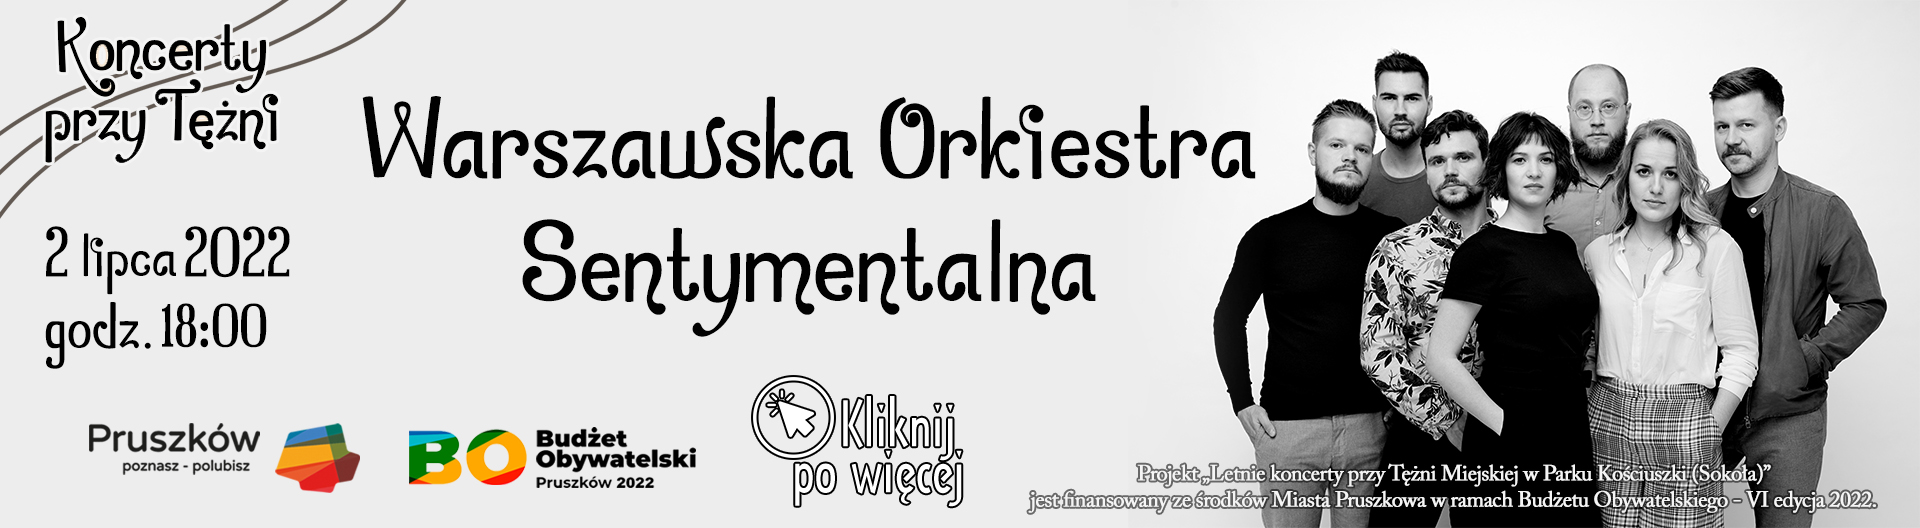 Koncerty przy Tężni - "Warszawska Orkiestra Sentymentalna"